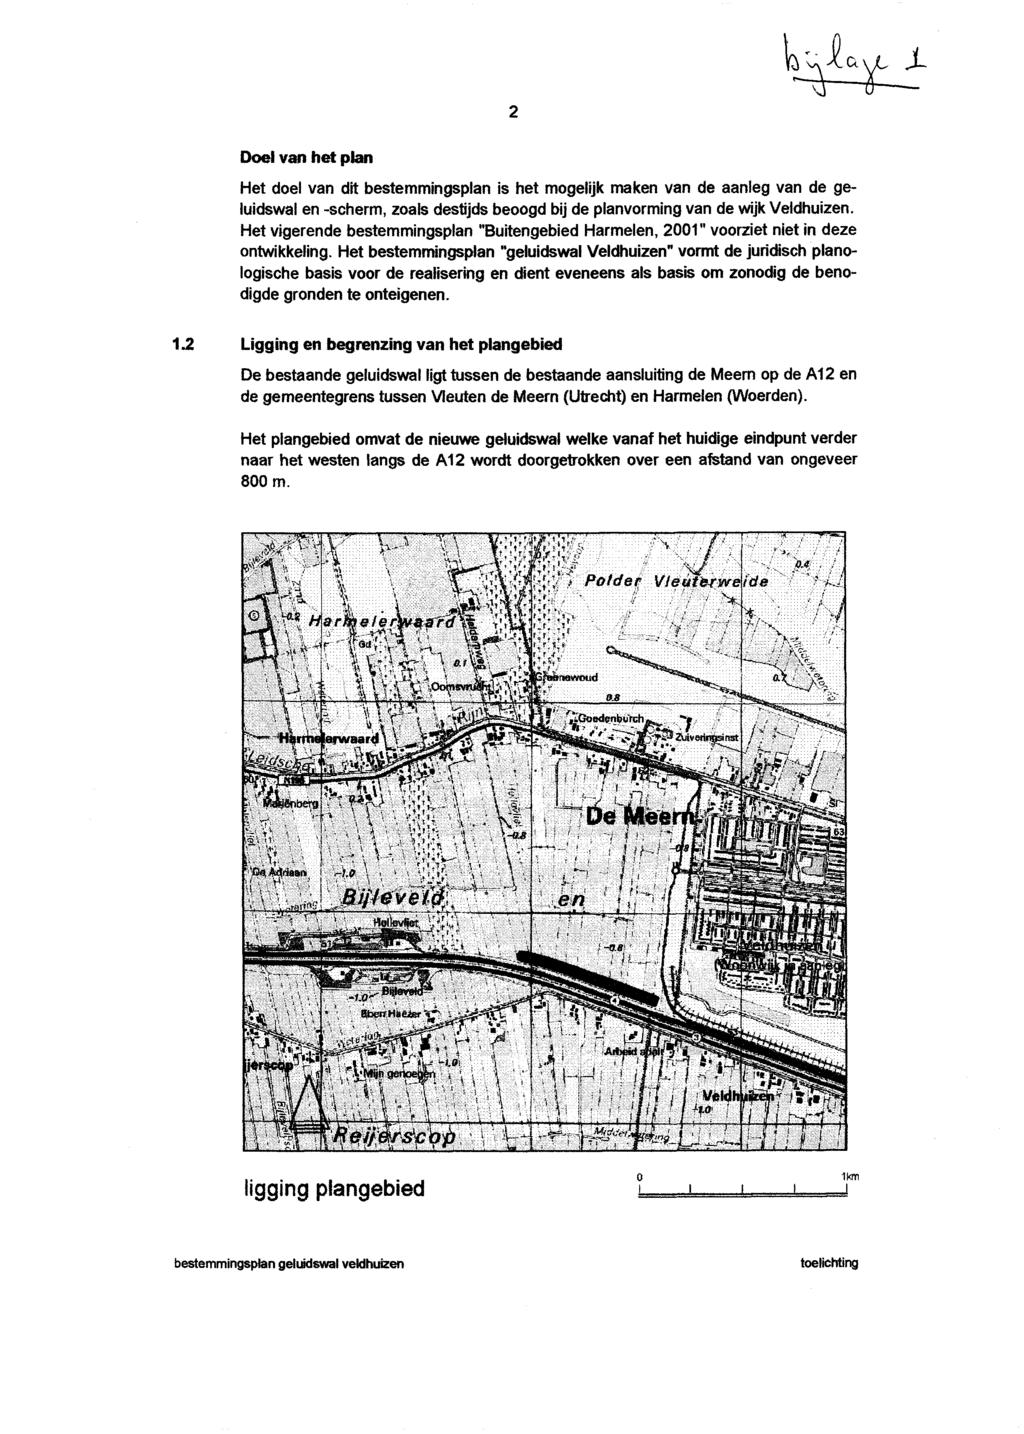 D. Doel van het plan Het doel van dit bestemmingsplan is het mogelijk maken van de aanleg van de geluidswal en -scherm, zoals destijds beoogd bij de planvorming van de wijk Veldhuizen.